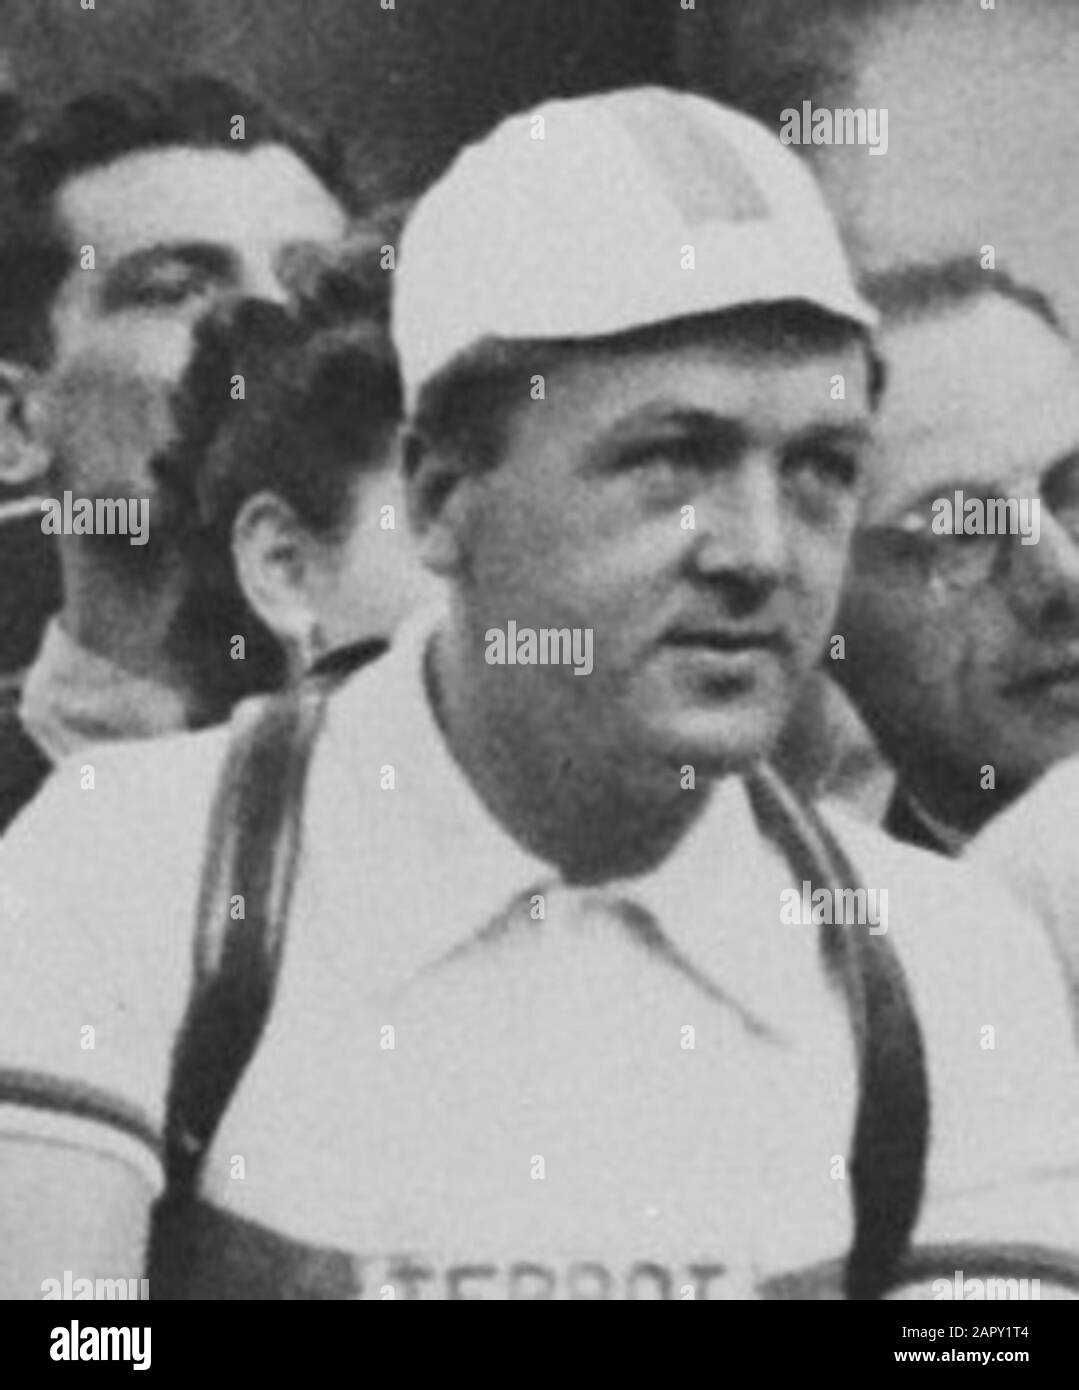 Tour de France 1950. Die niederländische Mannschaft am Start in Paris. VL r. (...) Wim de Ruyter (...); Stockfoto